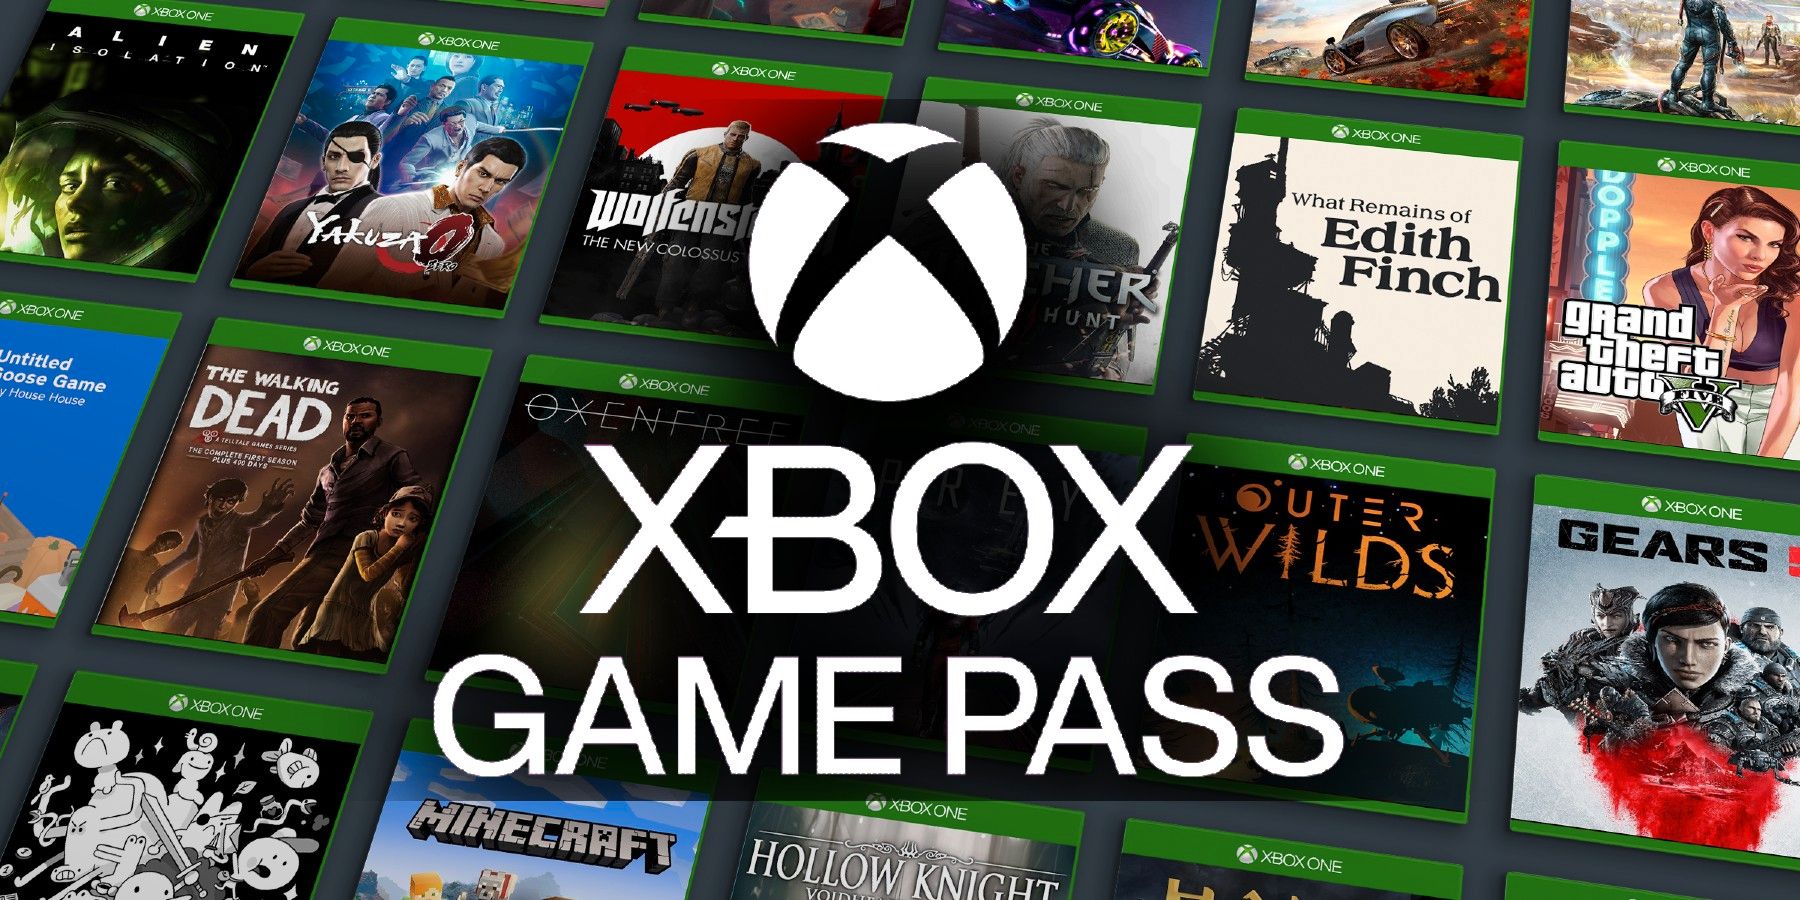 רשימת הראשי מציגה את כל המשחקים שהיו אי פעם ב- Xbox Game Pass ואילו הם בדרך